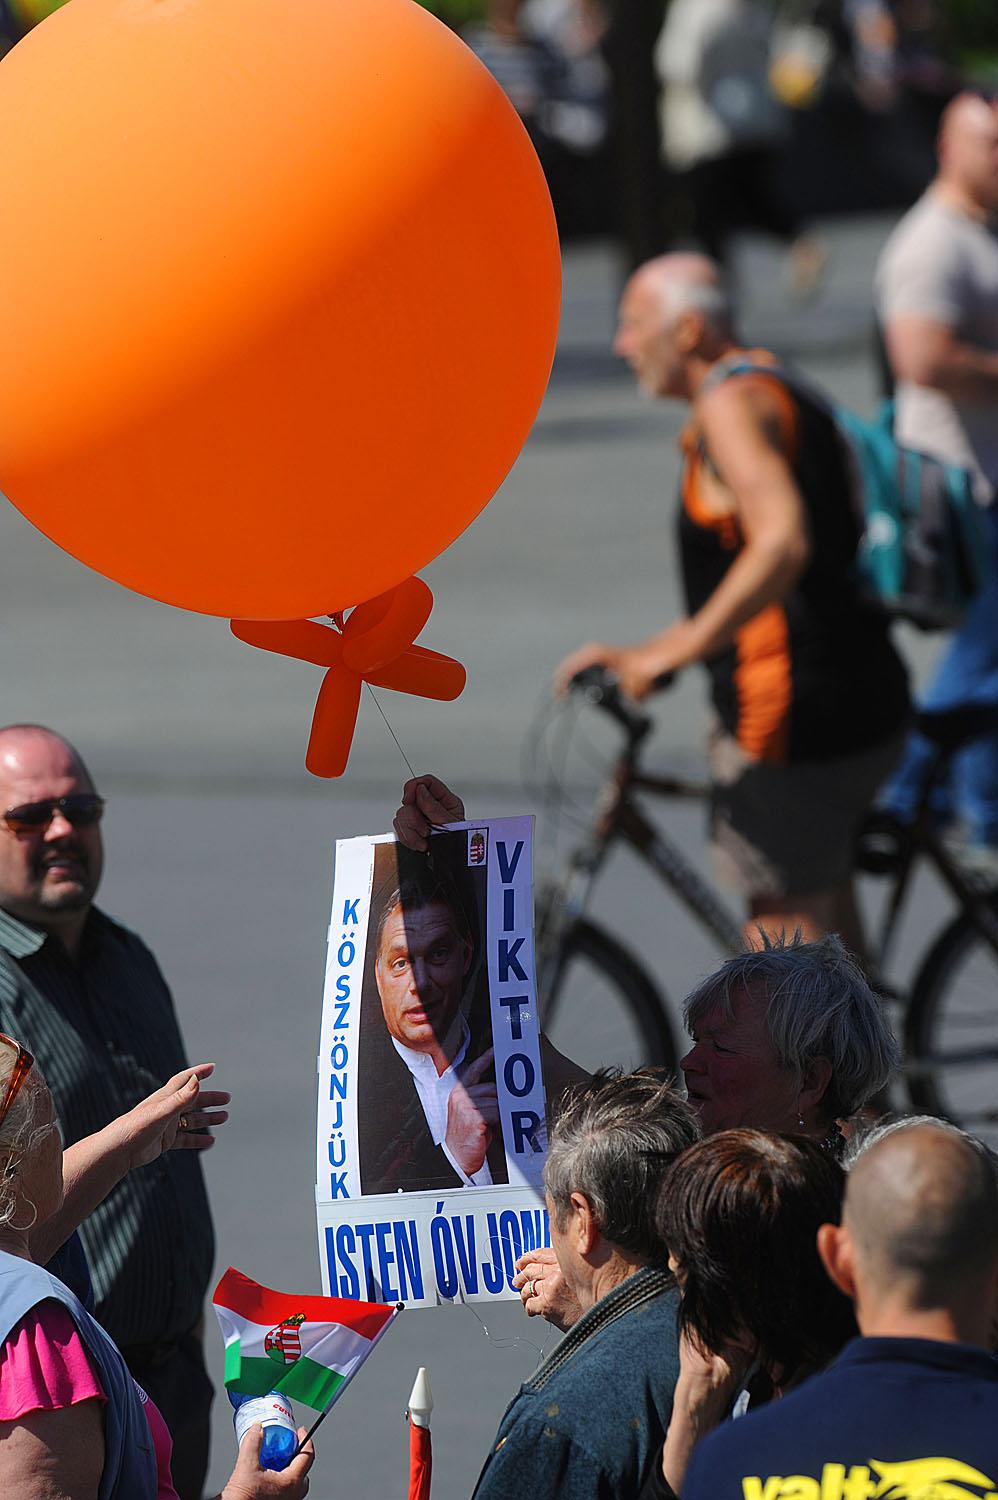 A rajongók megjelentek, bár lényegesen kevesebben voltak, mint amihez Orbán hozzá lehet szokva